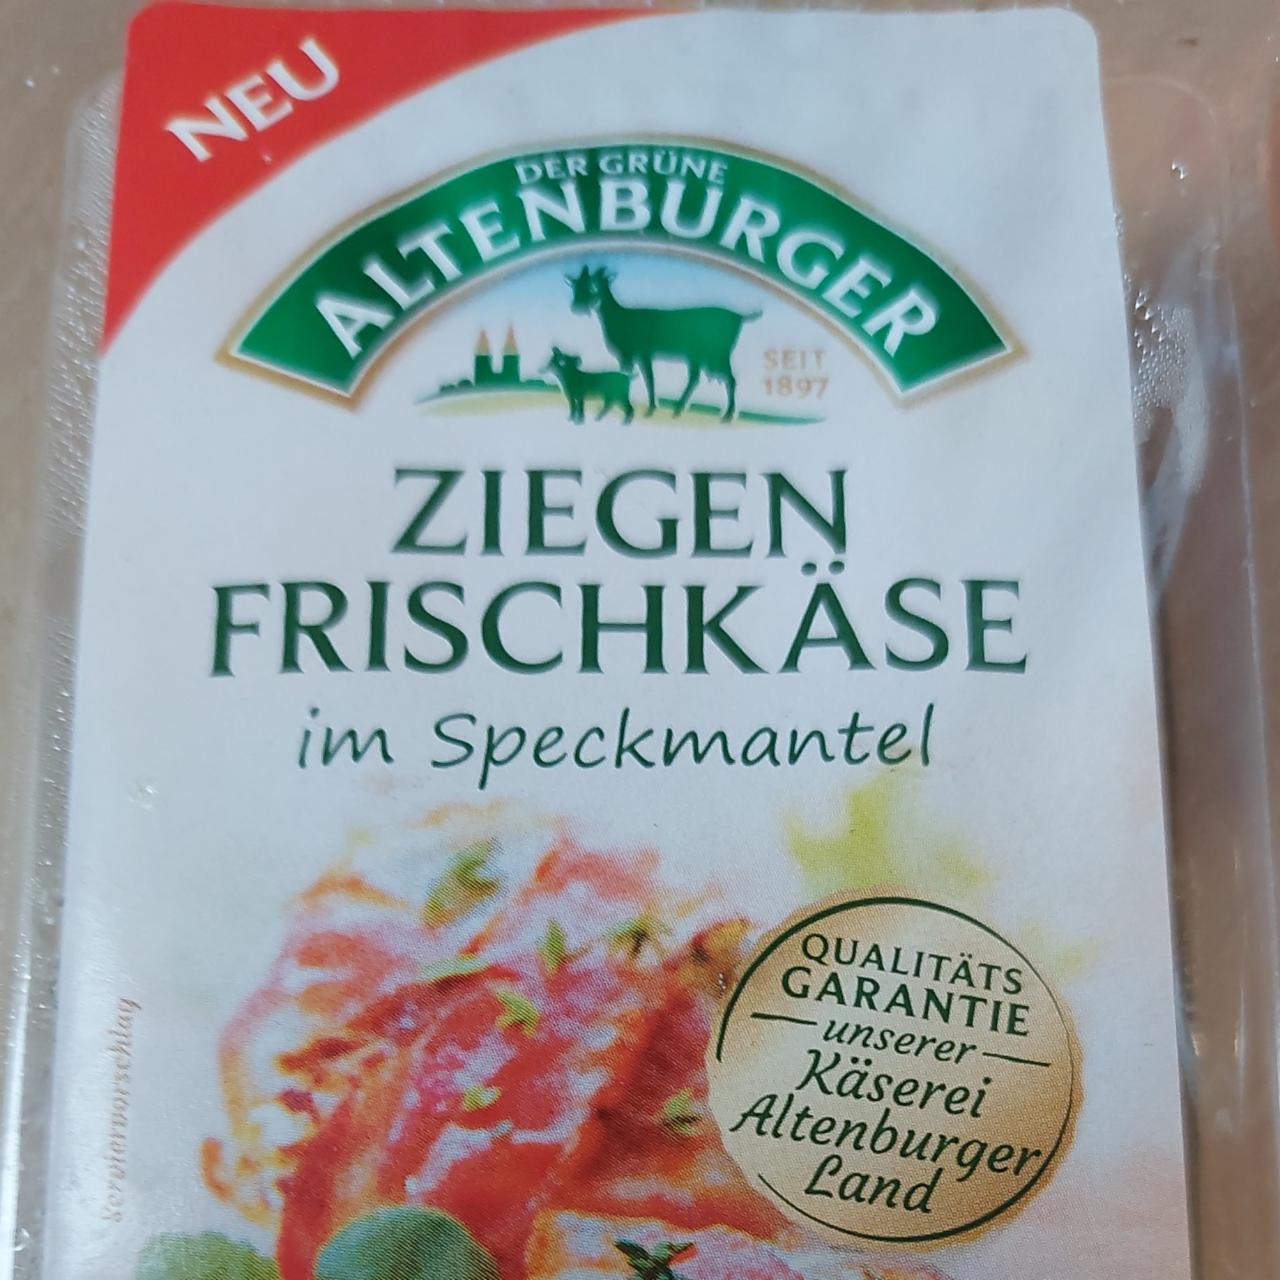 Фото - Сыр в беконе Ziegen frischkäse im Speckmantel Der Grüne Altenburger